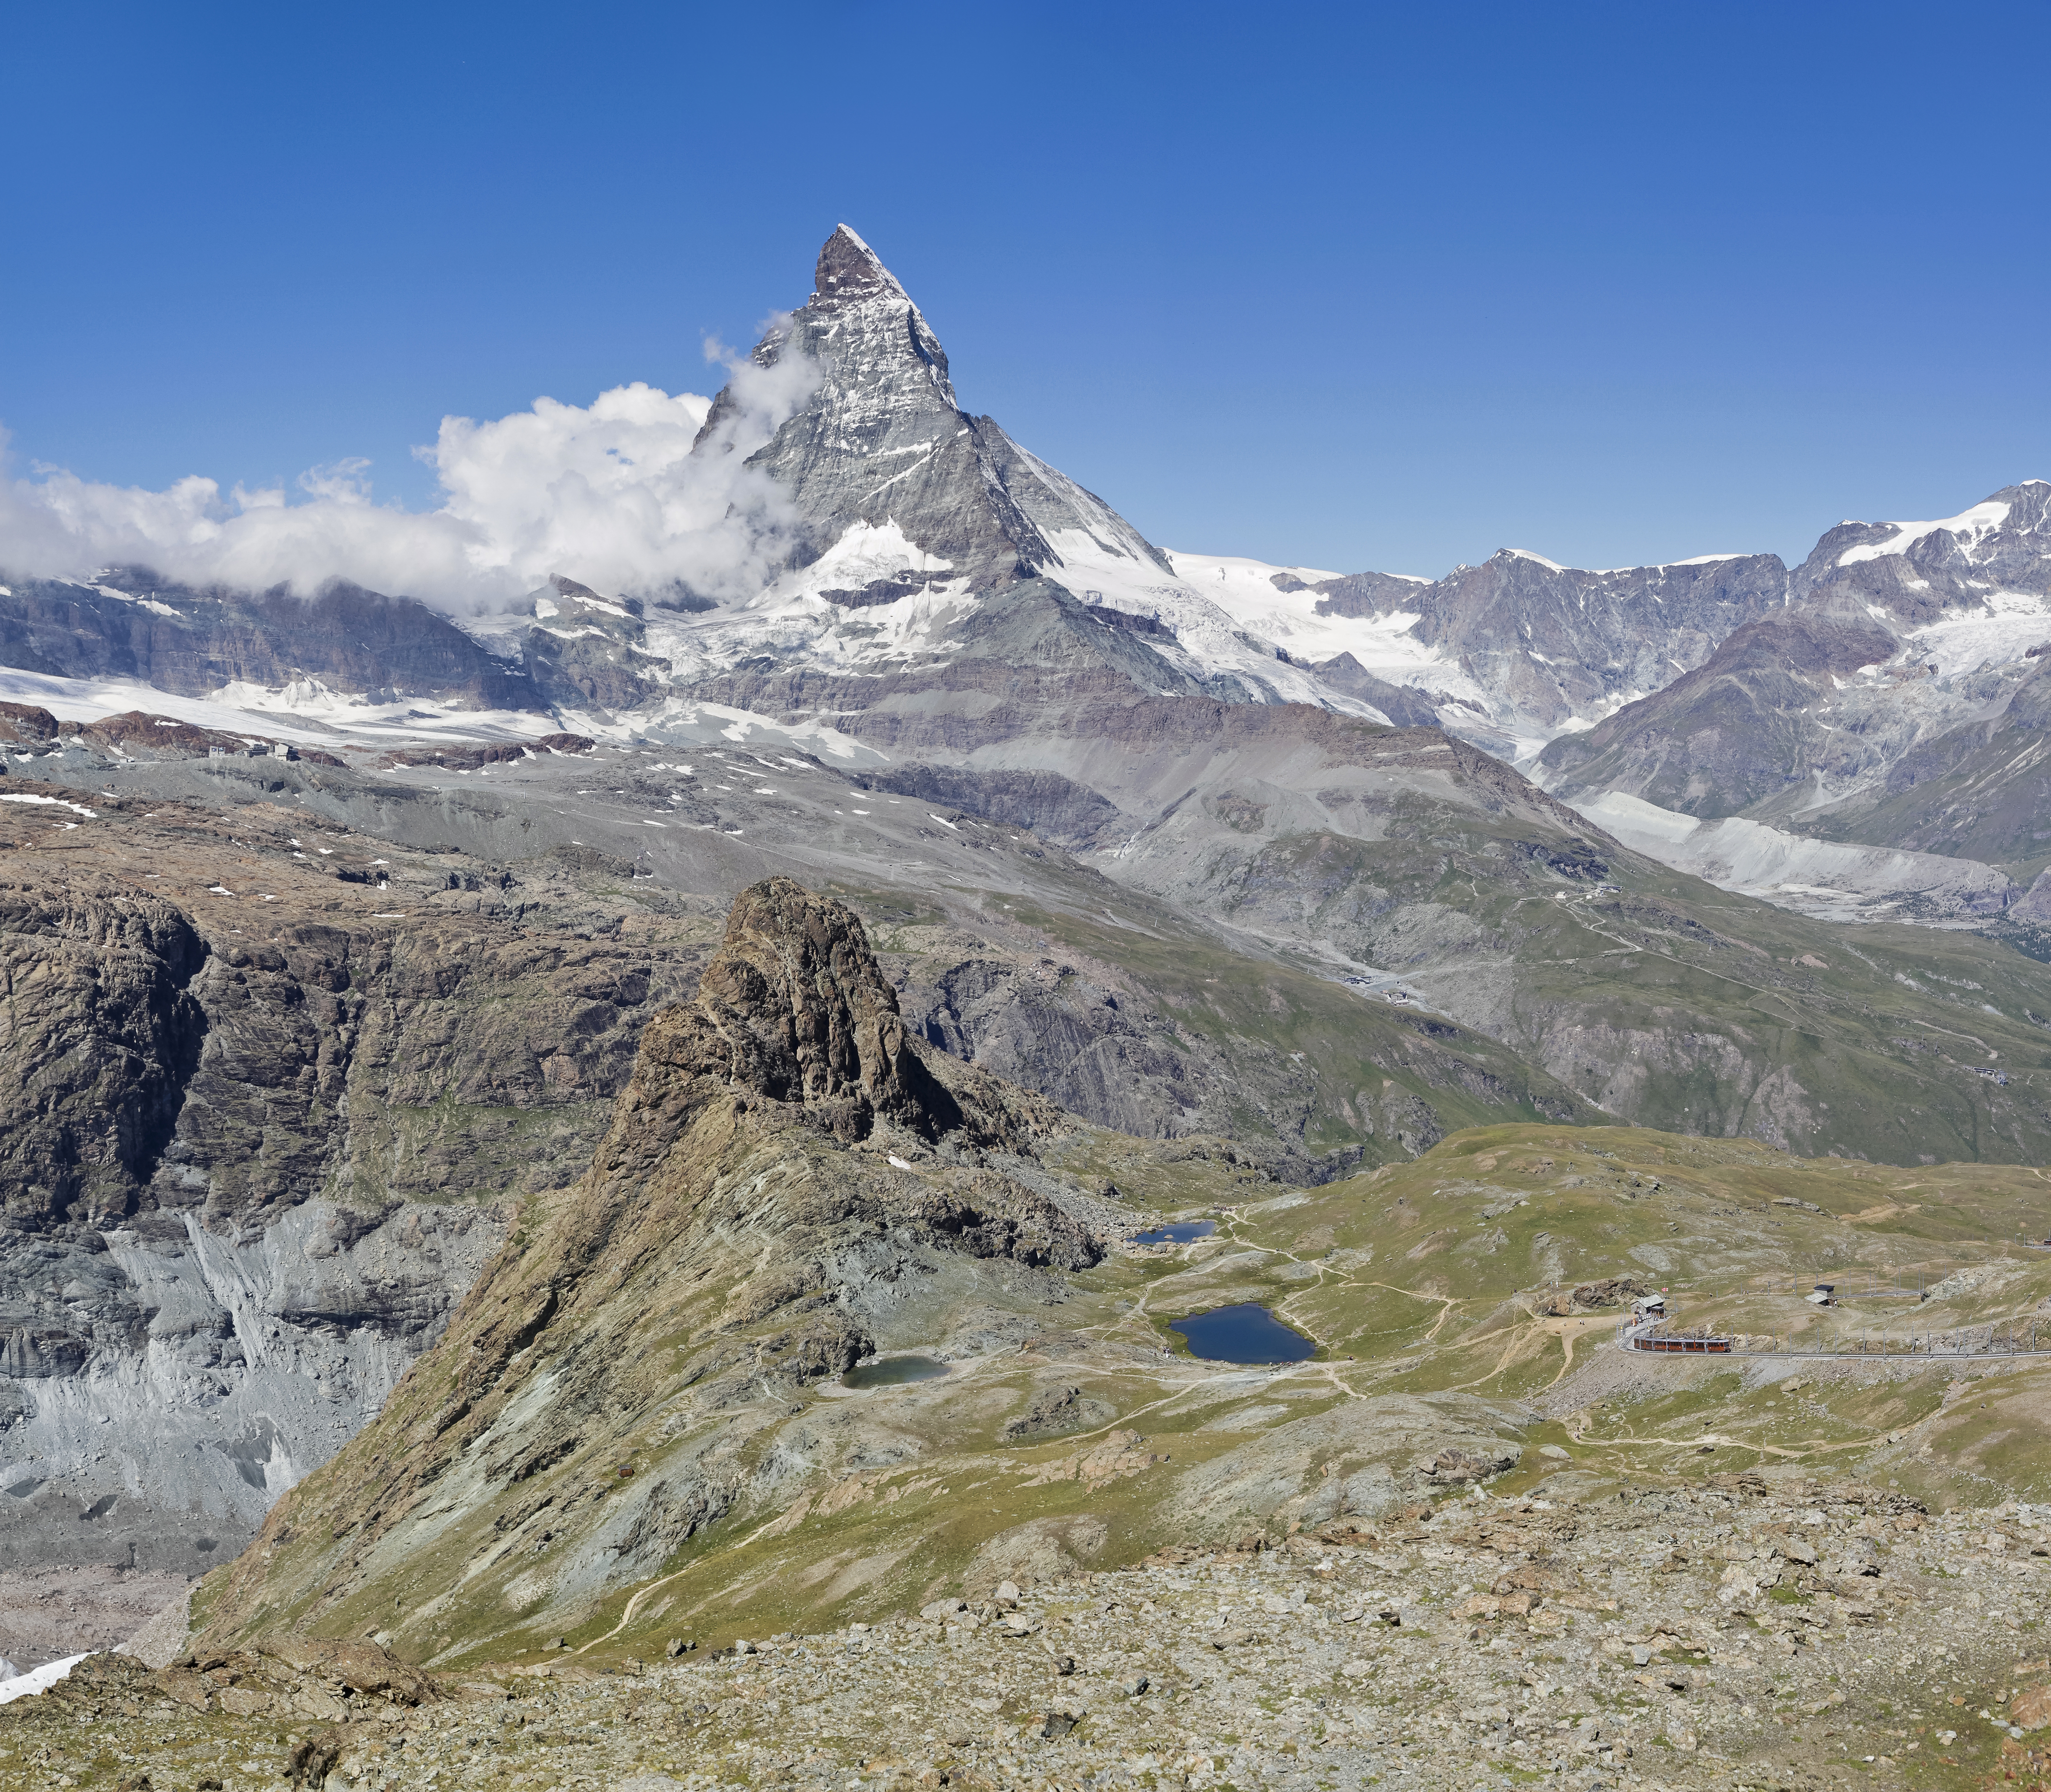 Matterhorn and Riffelhorn as seen from Gornergrat, Wallis, Switzerland, 2012 August